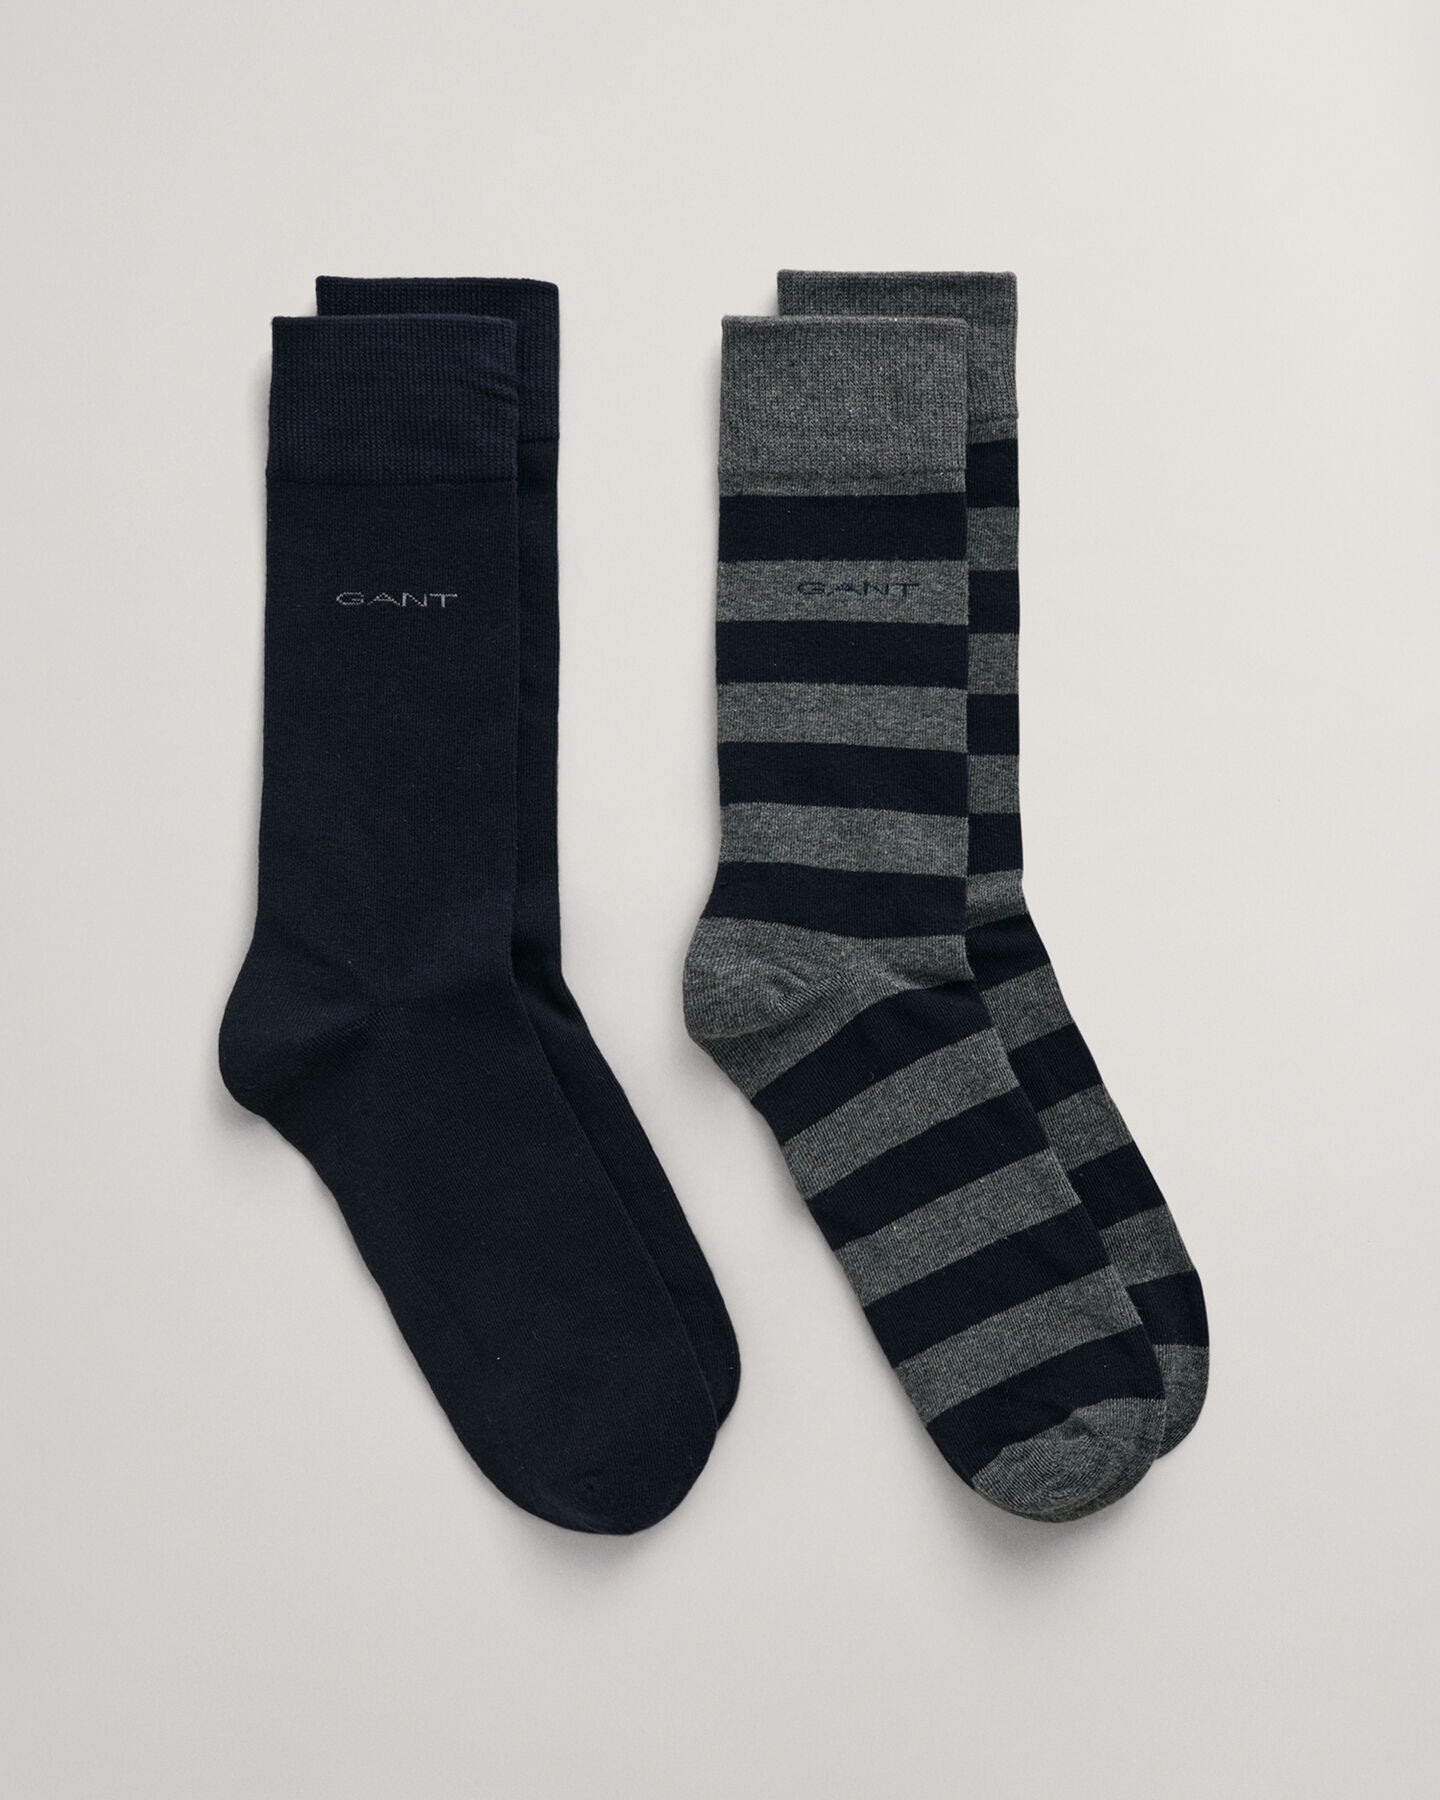 GANT - Charcoal Melange 2-Pack Barstripe & Solid Socks 9960261 090